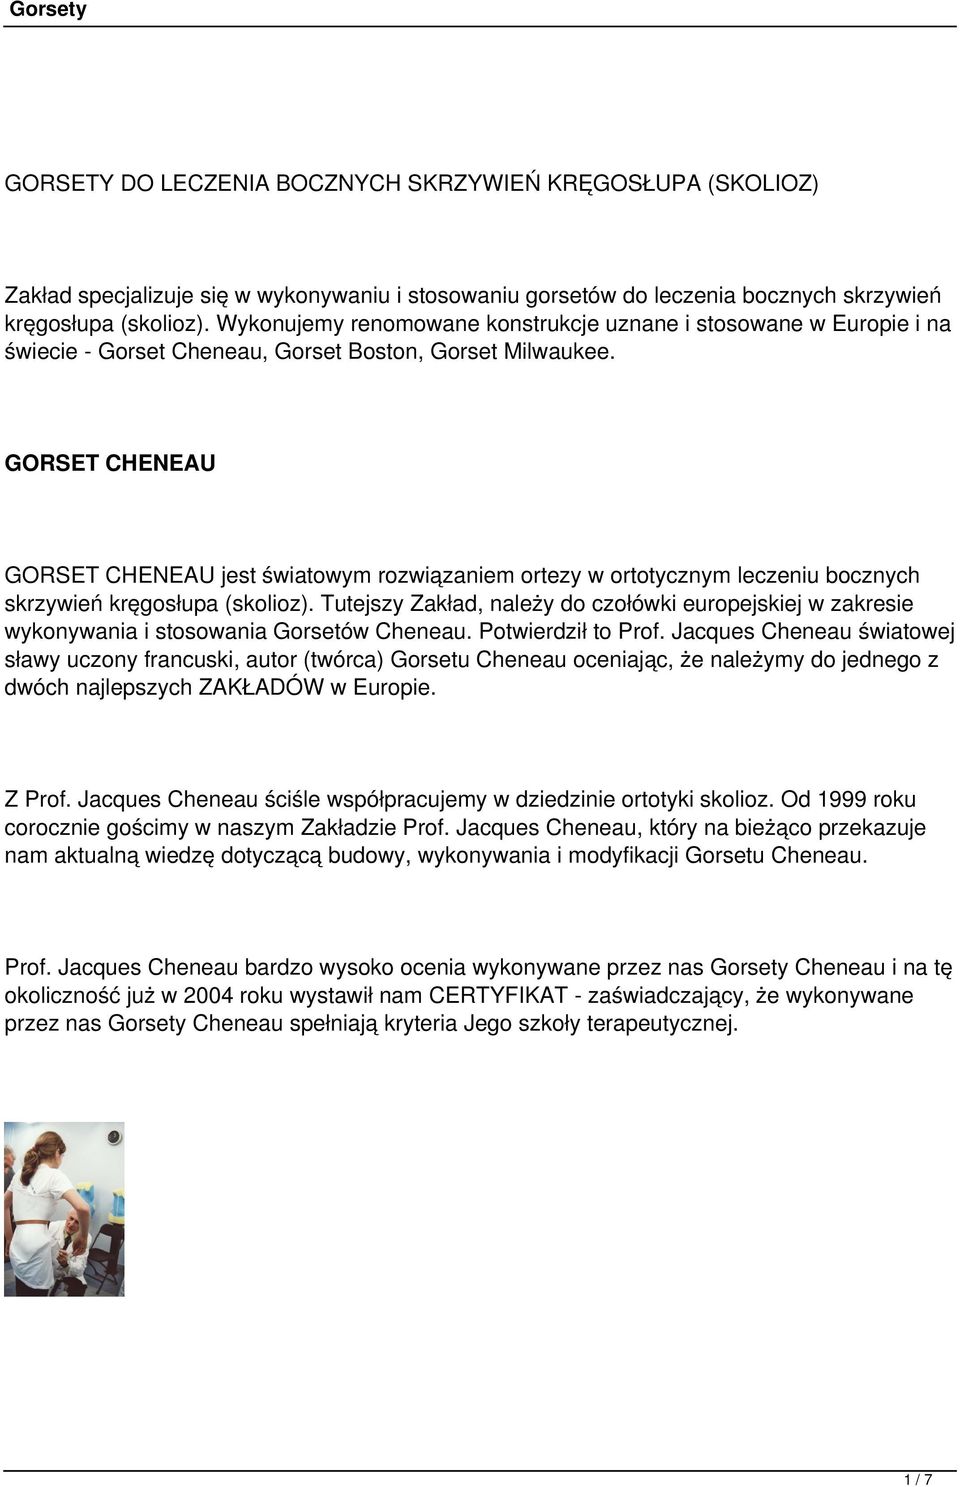 GORSET CHENEAU GORSET CHENEAU jest światowym rozwiązaniem ortezy w ortotycznym leczeniu bocznych skrzywień kręgosłupa (skolioz).